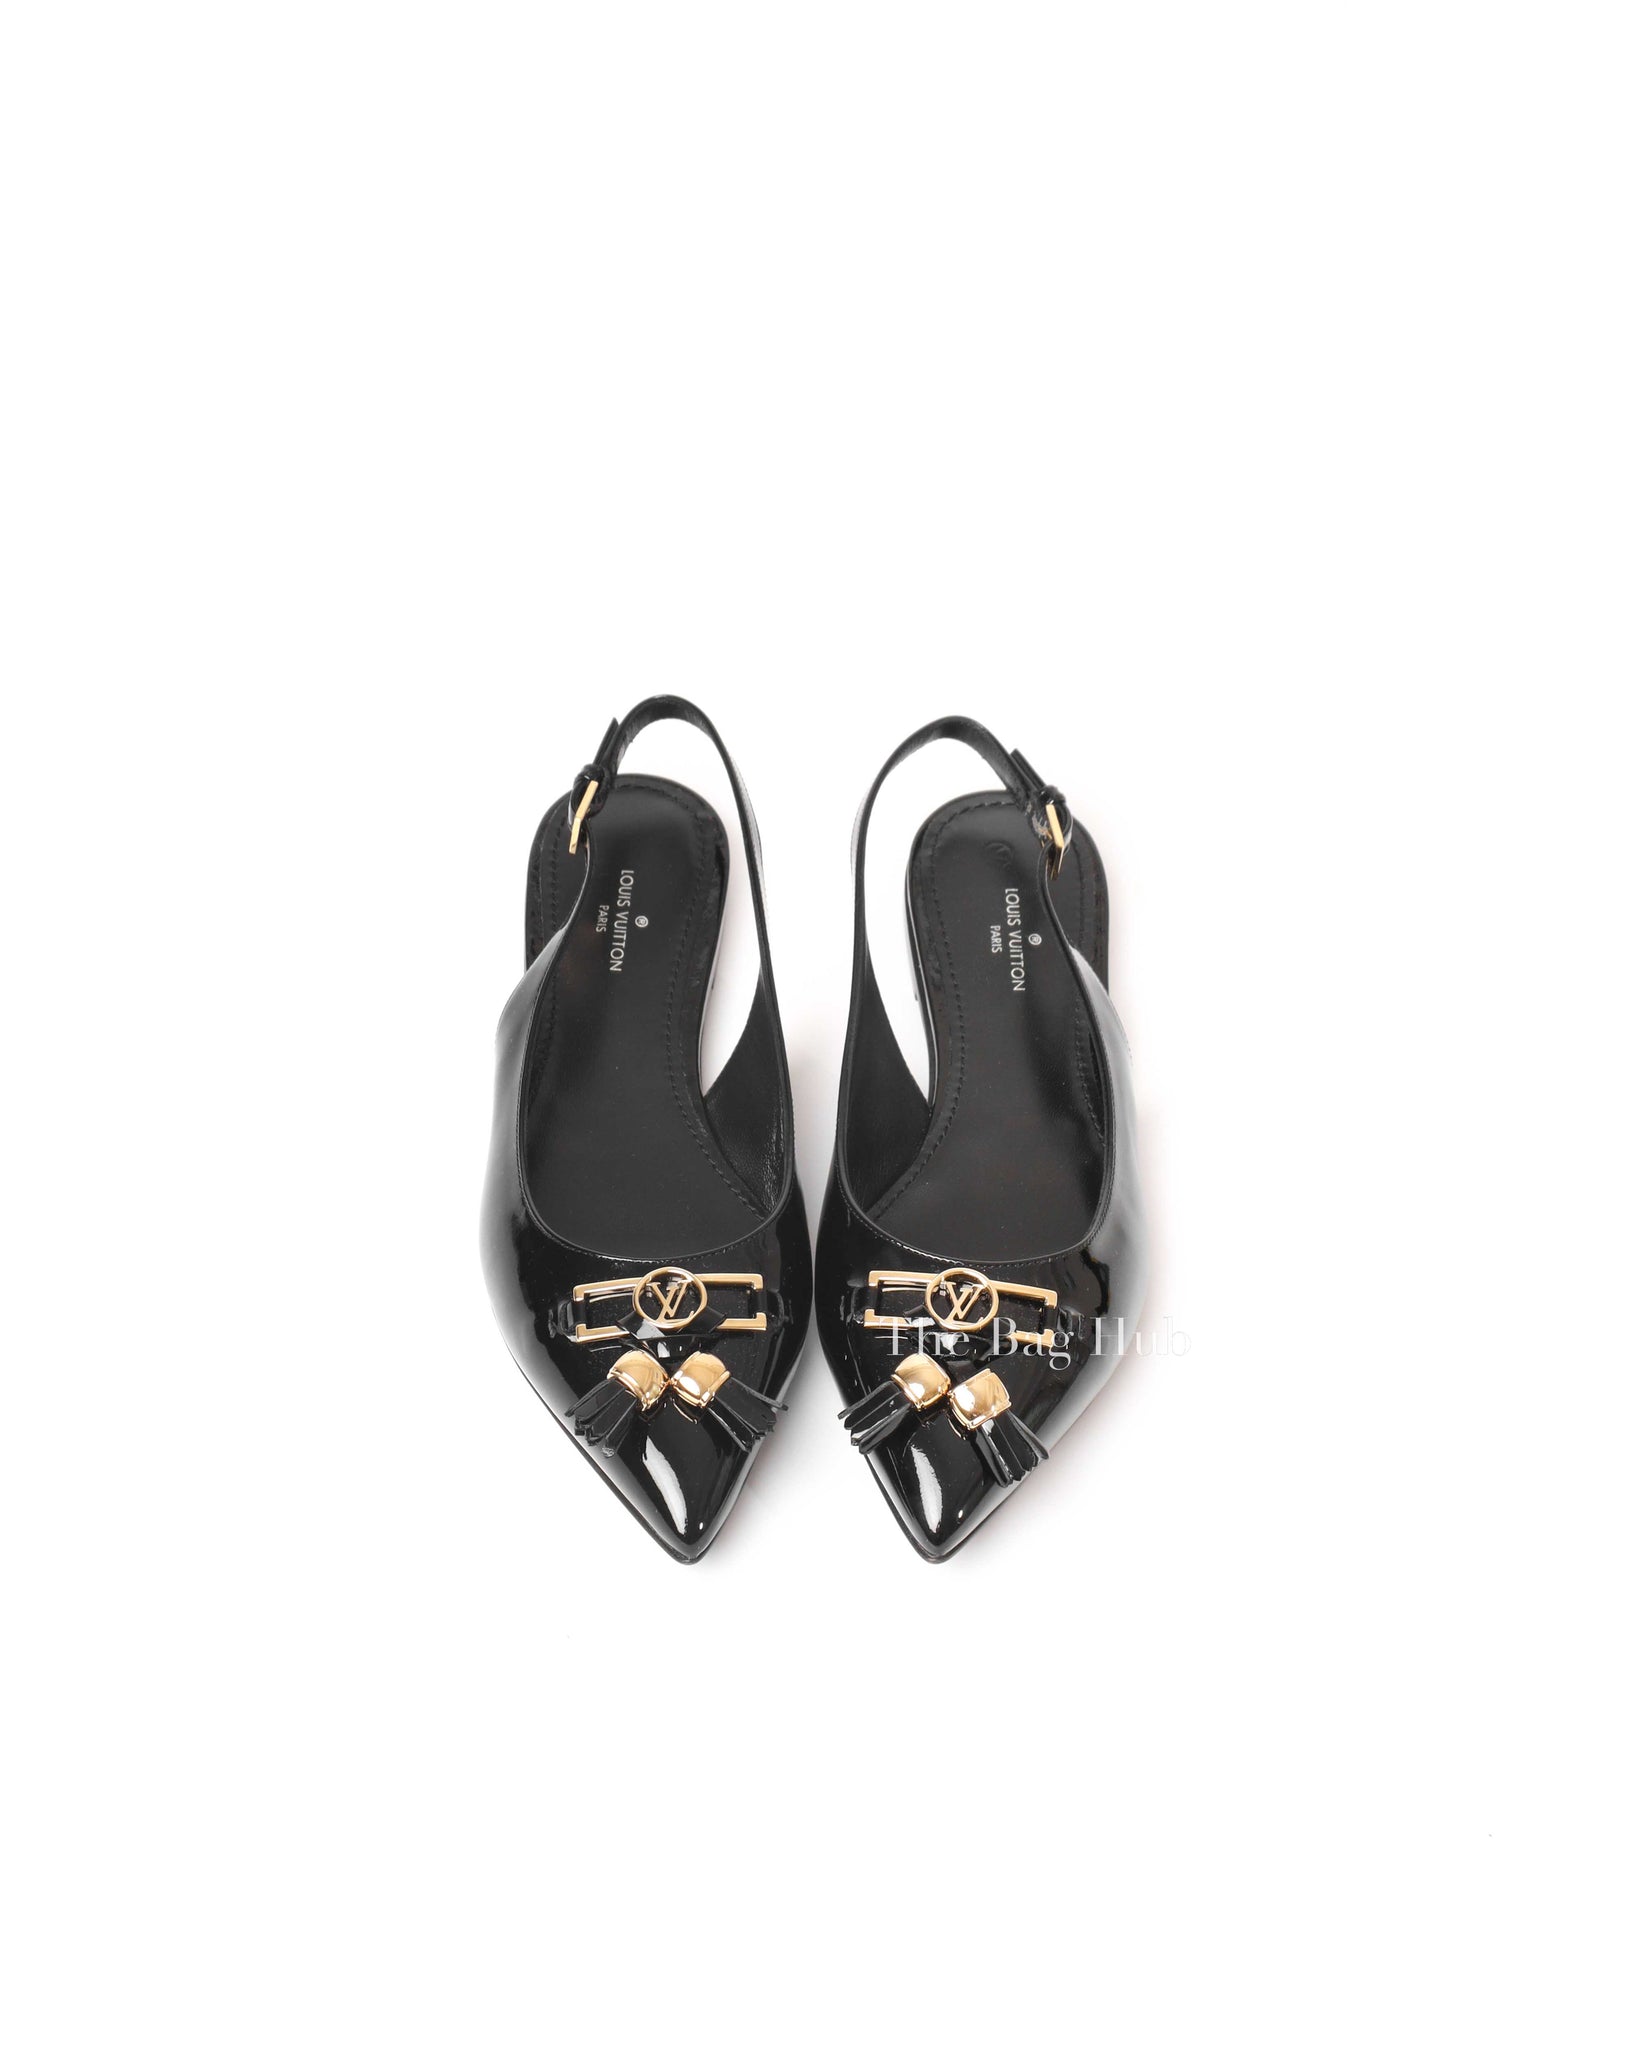 Louis Vuitton Noir Patent Leather Insider Ballet Flats Slingback Size 35.5-4